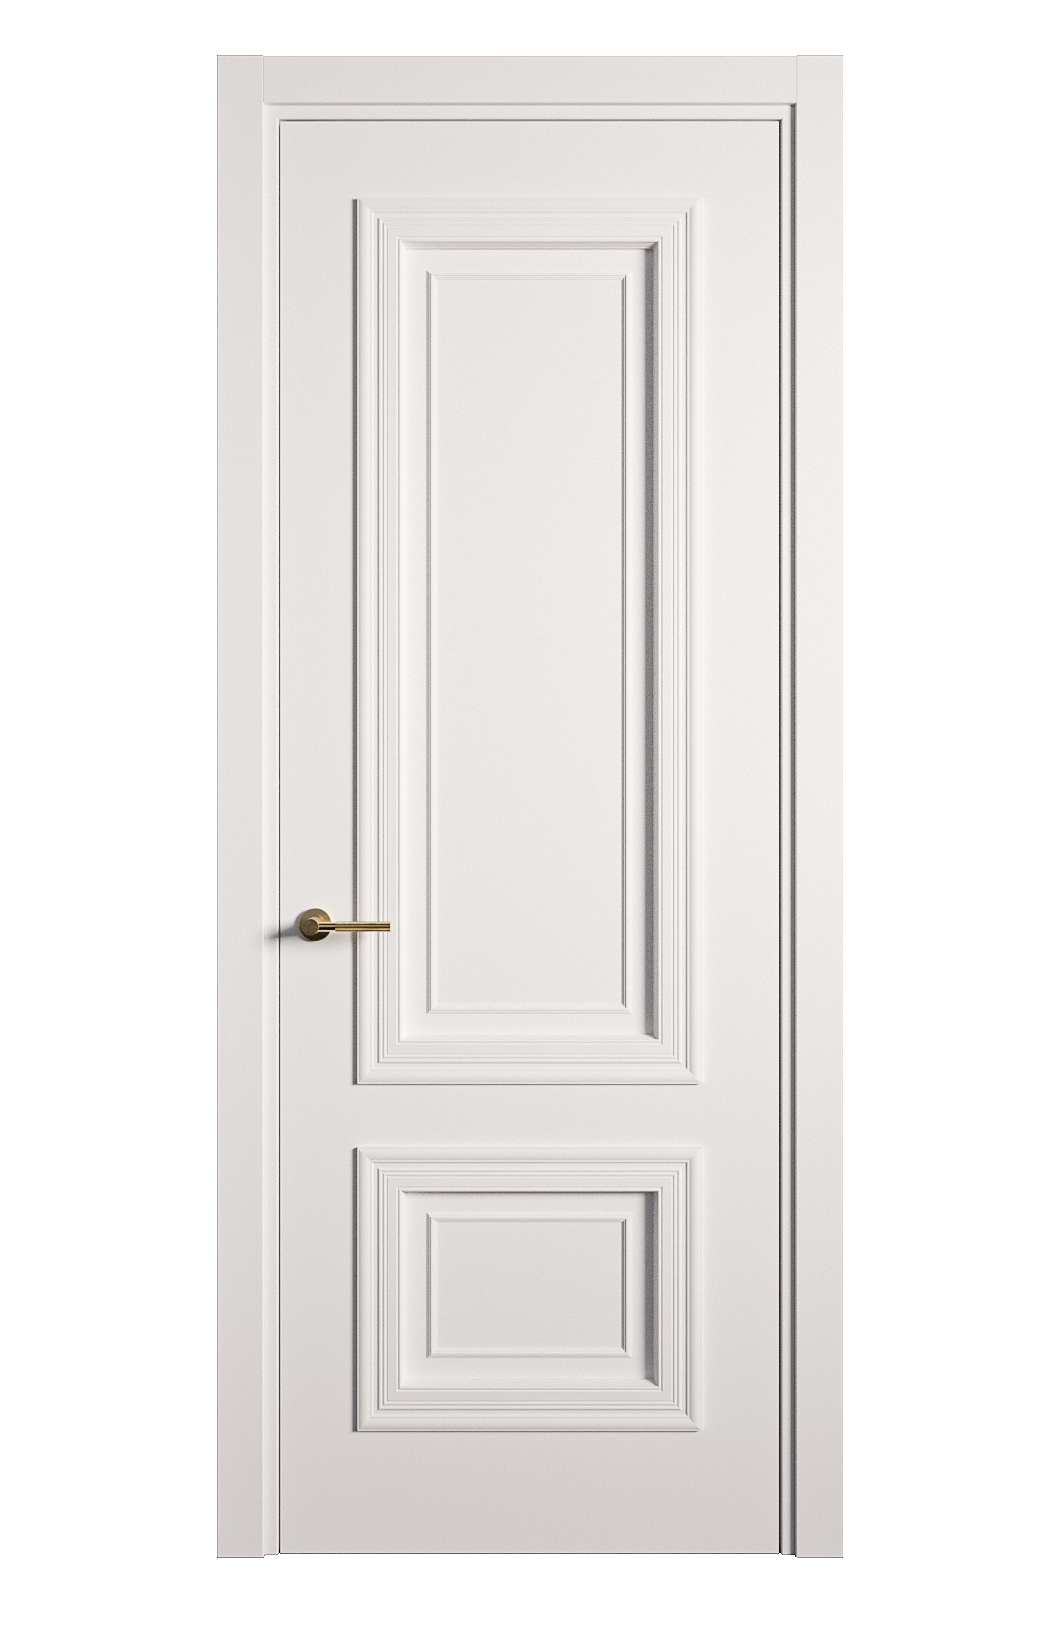 Межкомнатная дверь Мальта-1 глухая эмаль ral 9003 26959